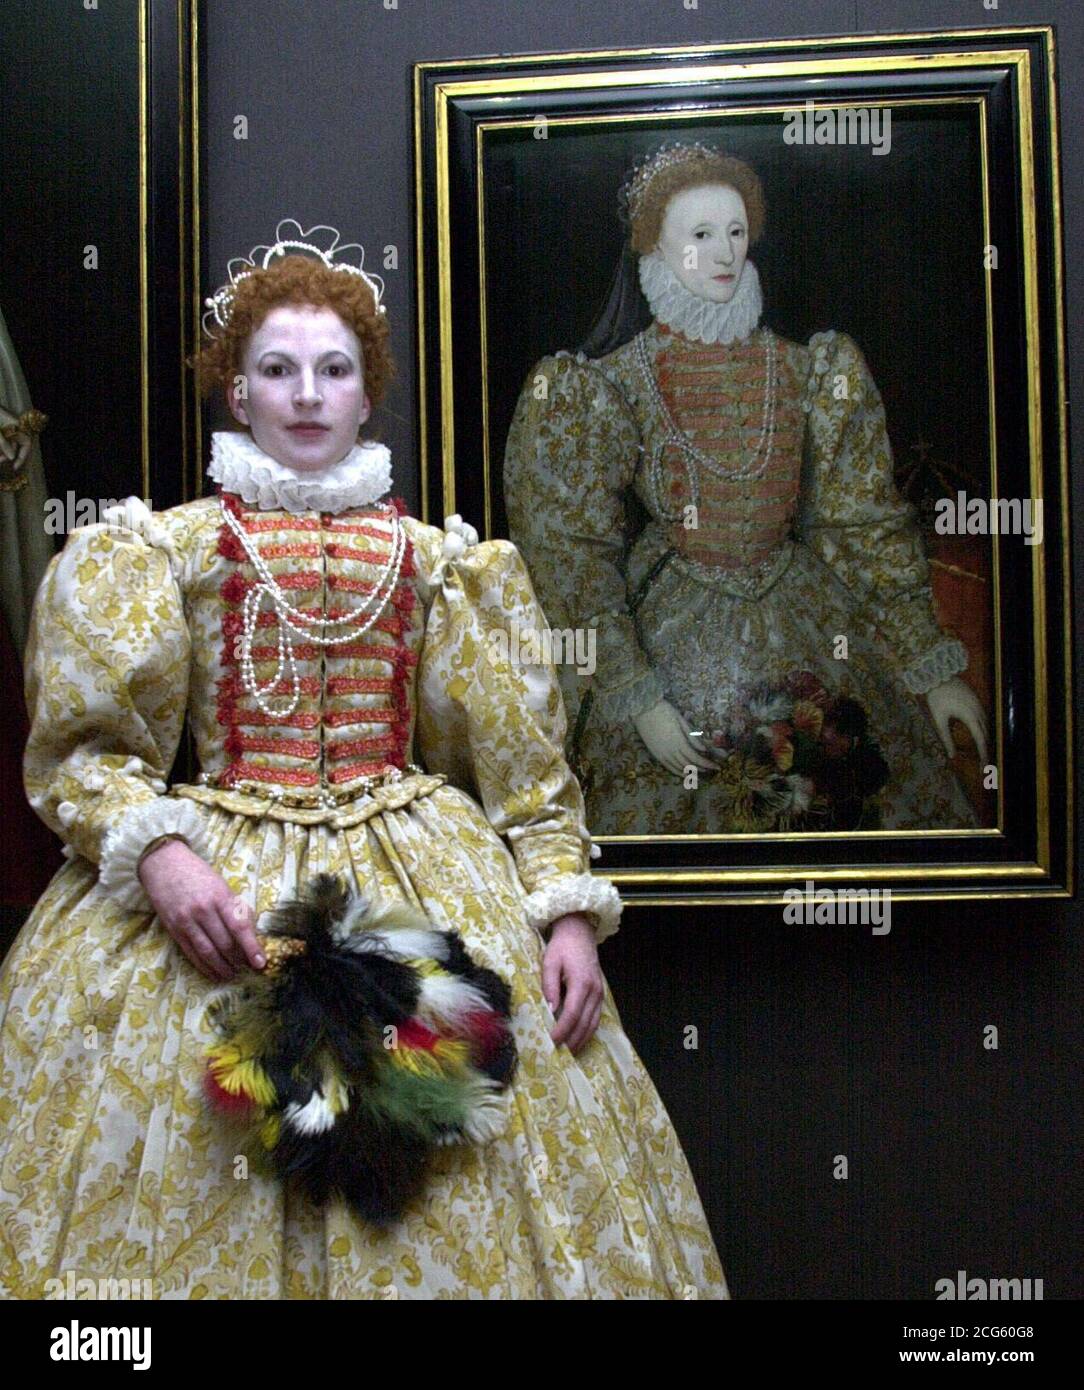 Annie Townsend eine Schülerin der Wimbledon School of Art, von der Garderobe Abteilung, in historischen Kostümen als Elizabeth I gekleidet, neben einem Porträt von einem unbekannten Künstler, c.1575 in der National Portrait Gallery, London. * die Schüler rekonstruieren Porträts aus der Tudor-Zeit bis zum 19. Jahrhundert, die Inspiration für ihre aufwendigen Kostüme waren. Stockfoto